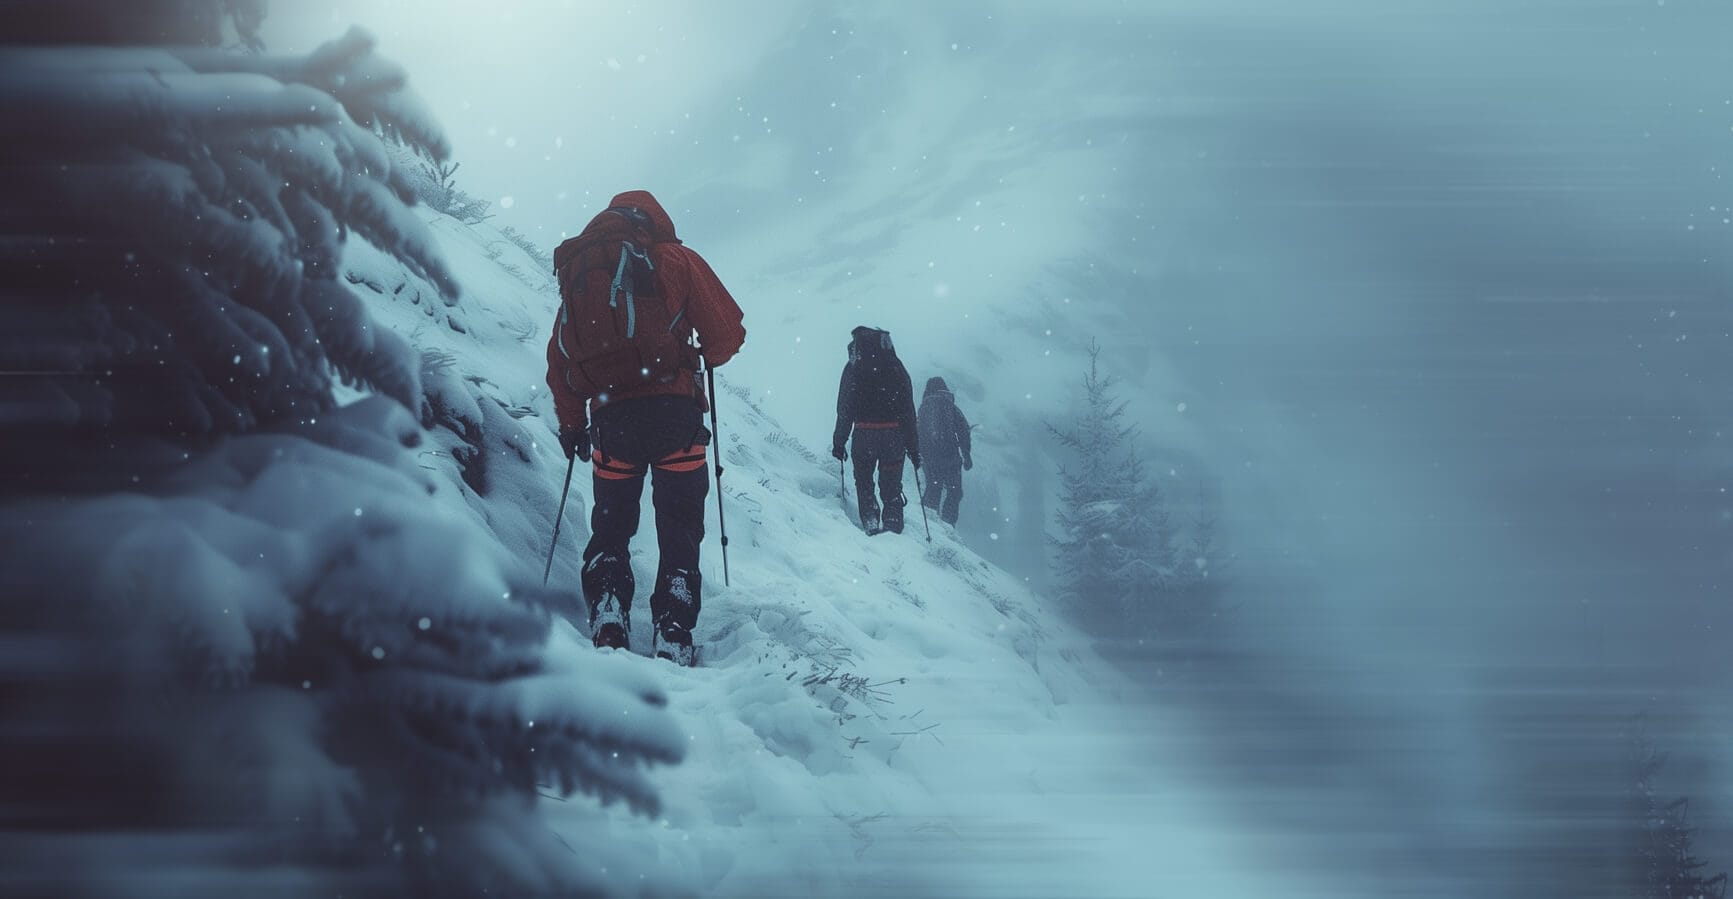 Weiterleitungen vermeiden. Das Bild zeigt ein heftiges Schneegestöber, dass drei winterlich bekleidete Wanderer umhüllt.